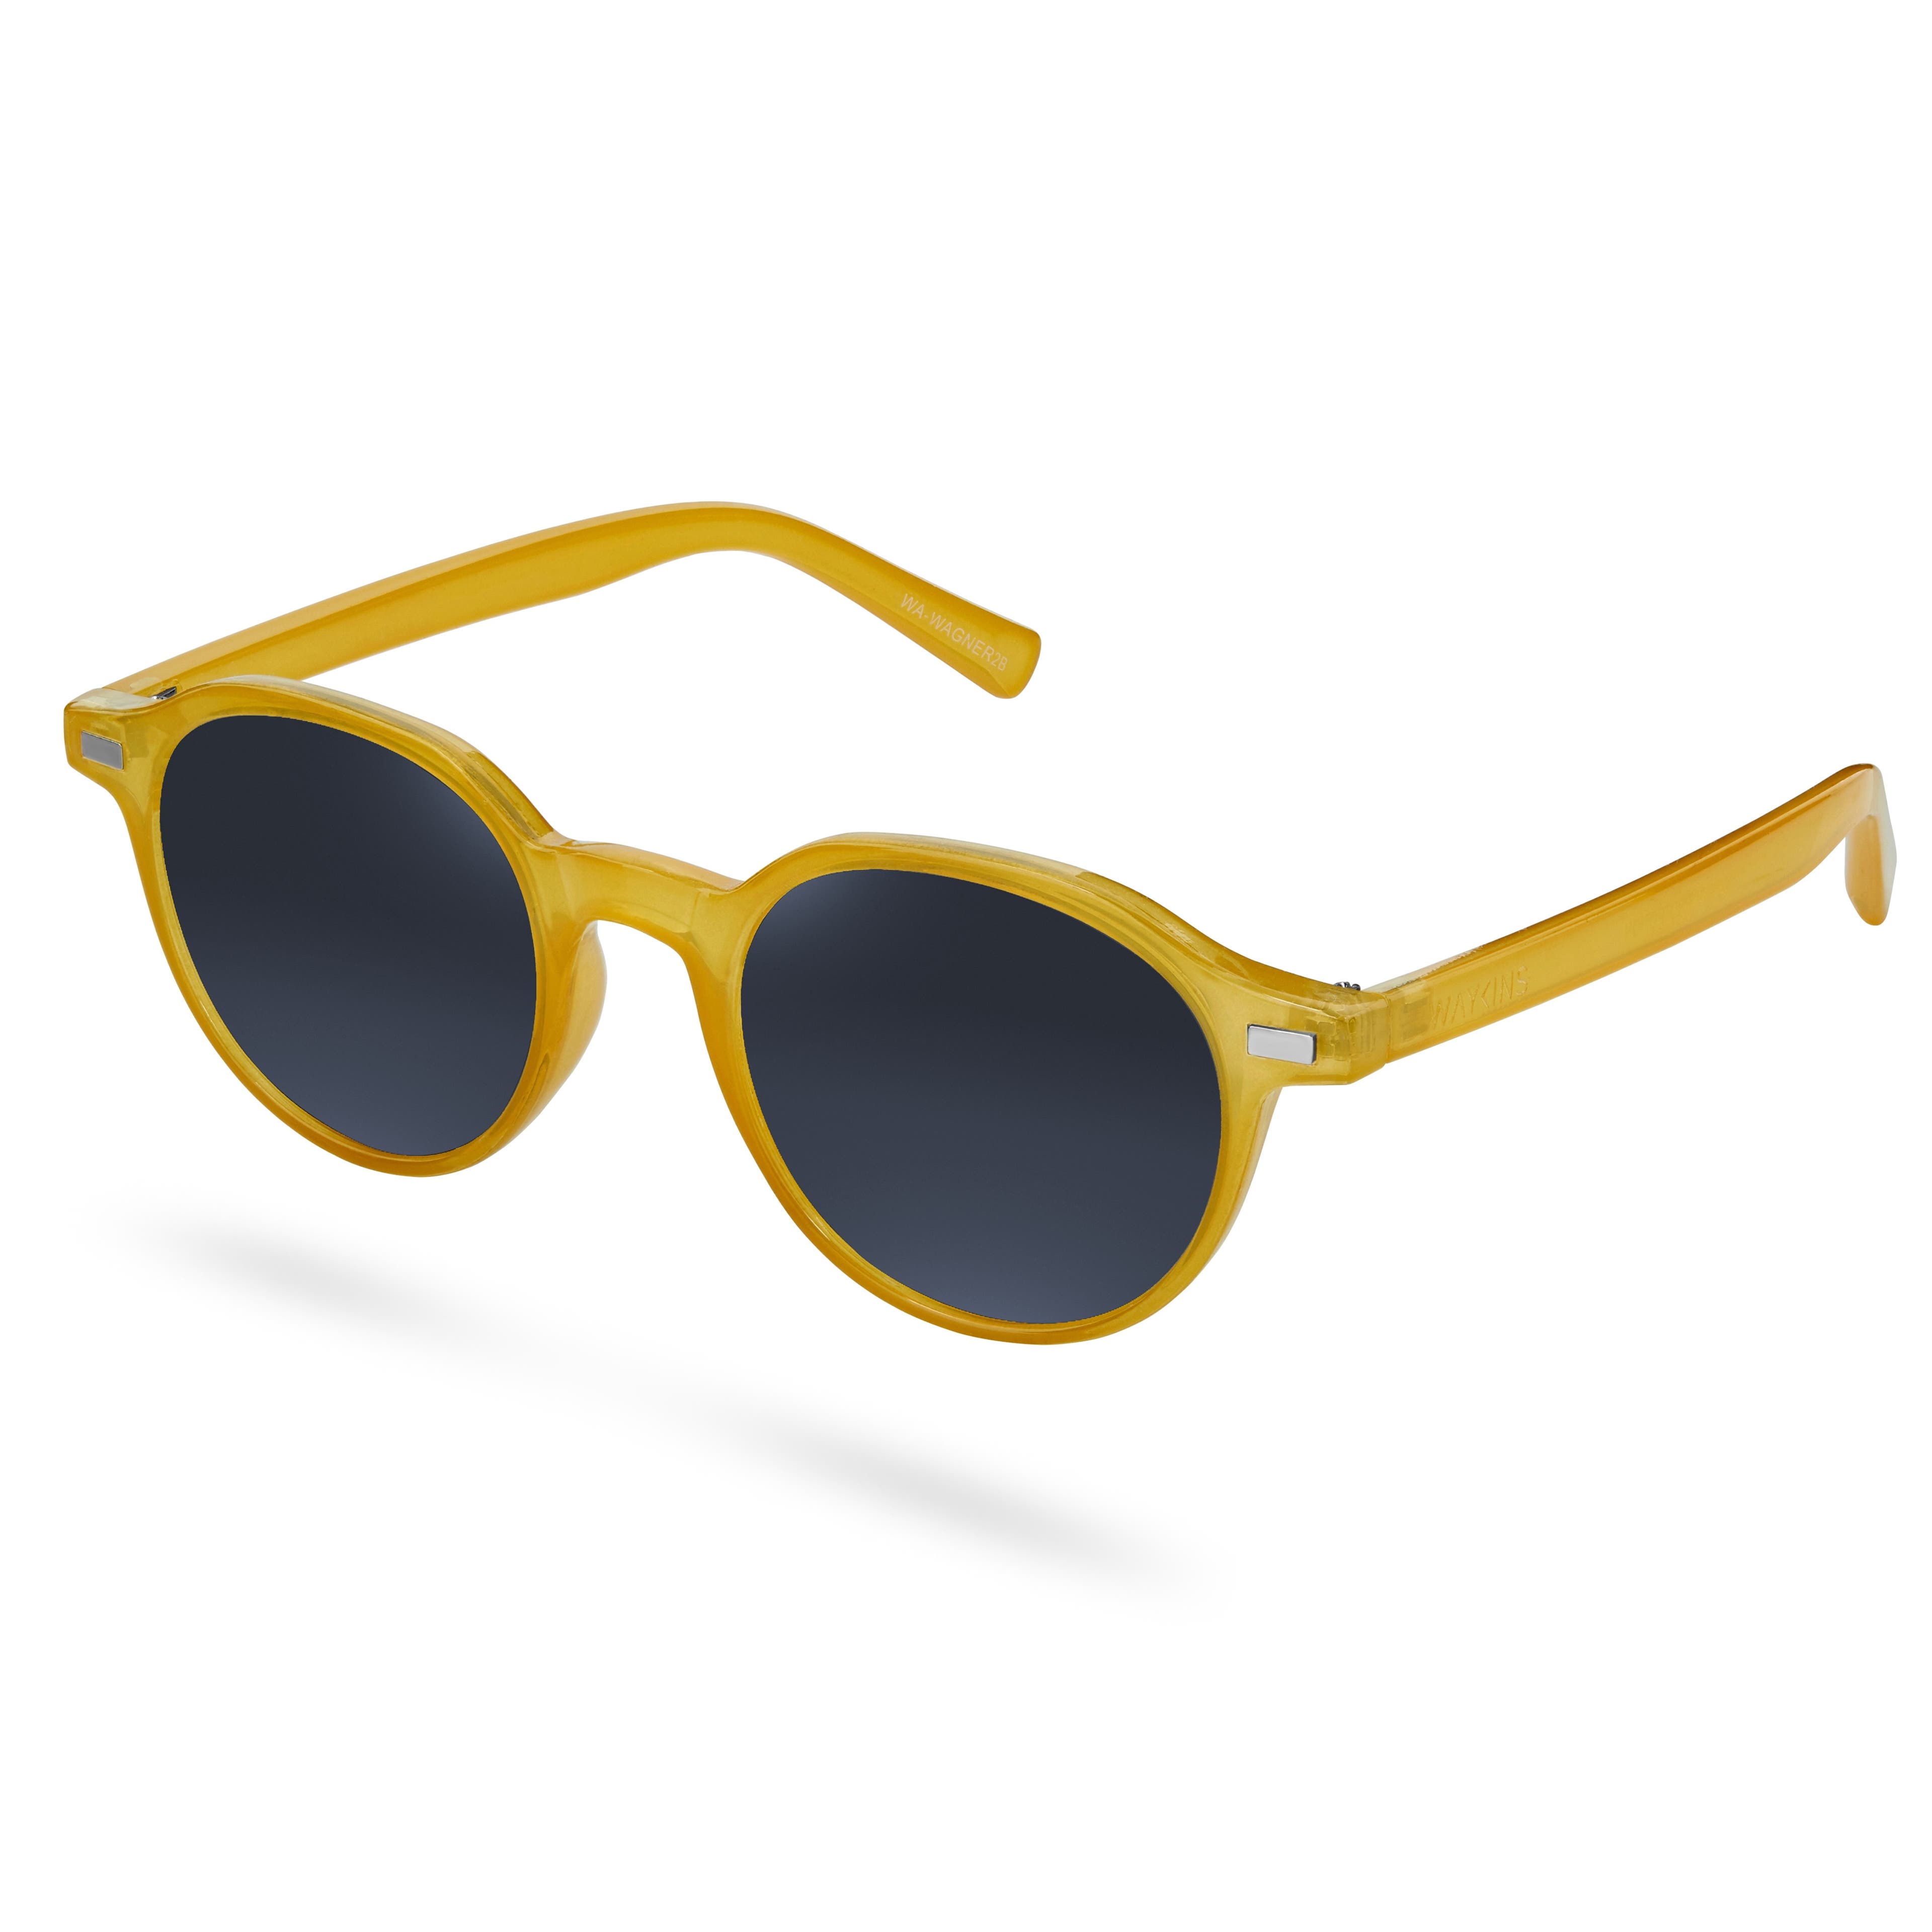 Żółto-szare okulary przeciwsłoneczne Wagner Wade